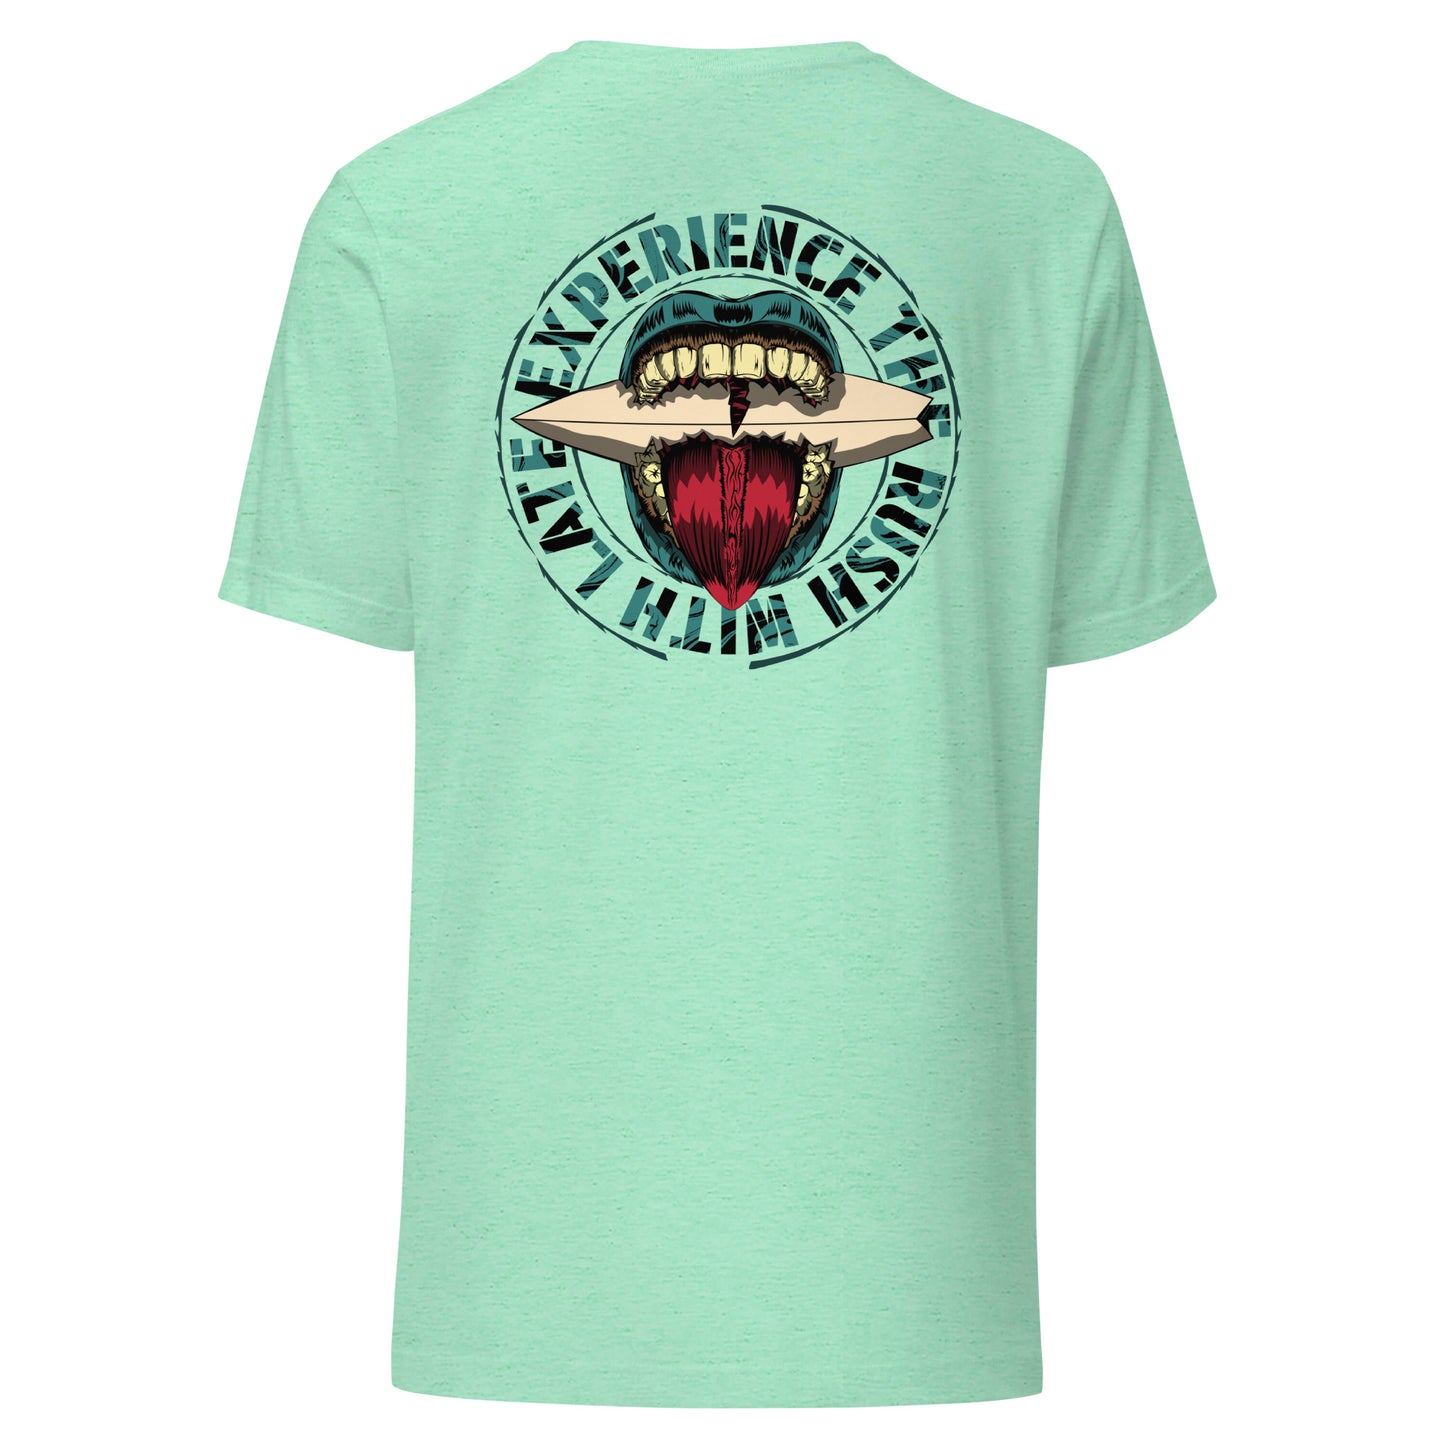 T-Shirt de surfeur style santacruz skateboarding et planche de surf texte experience the rush Late t-shirt dos couleur heather mint